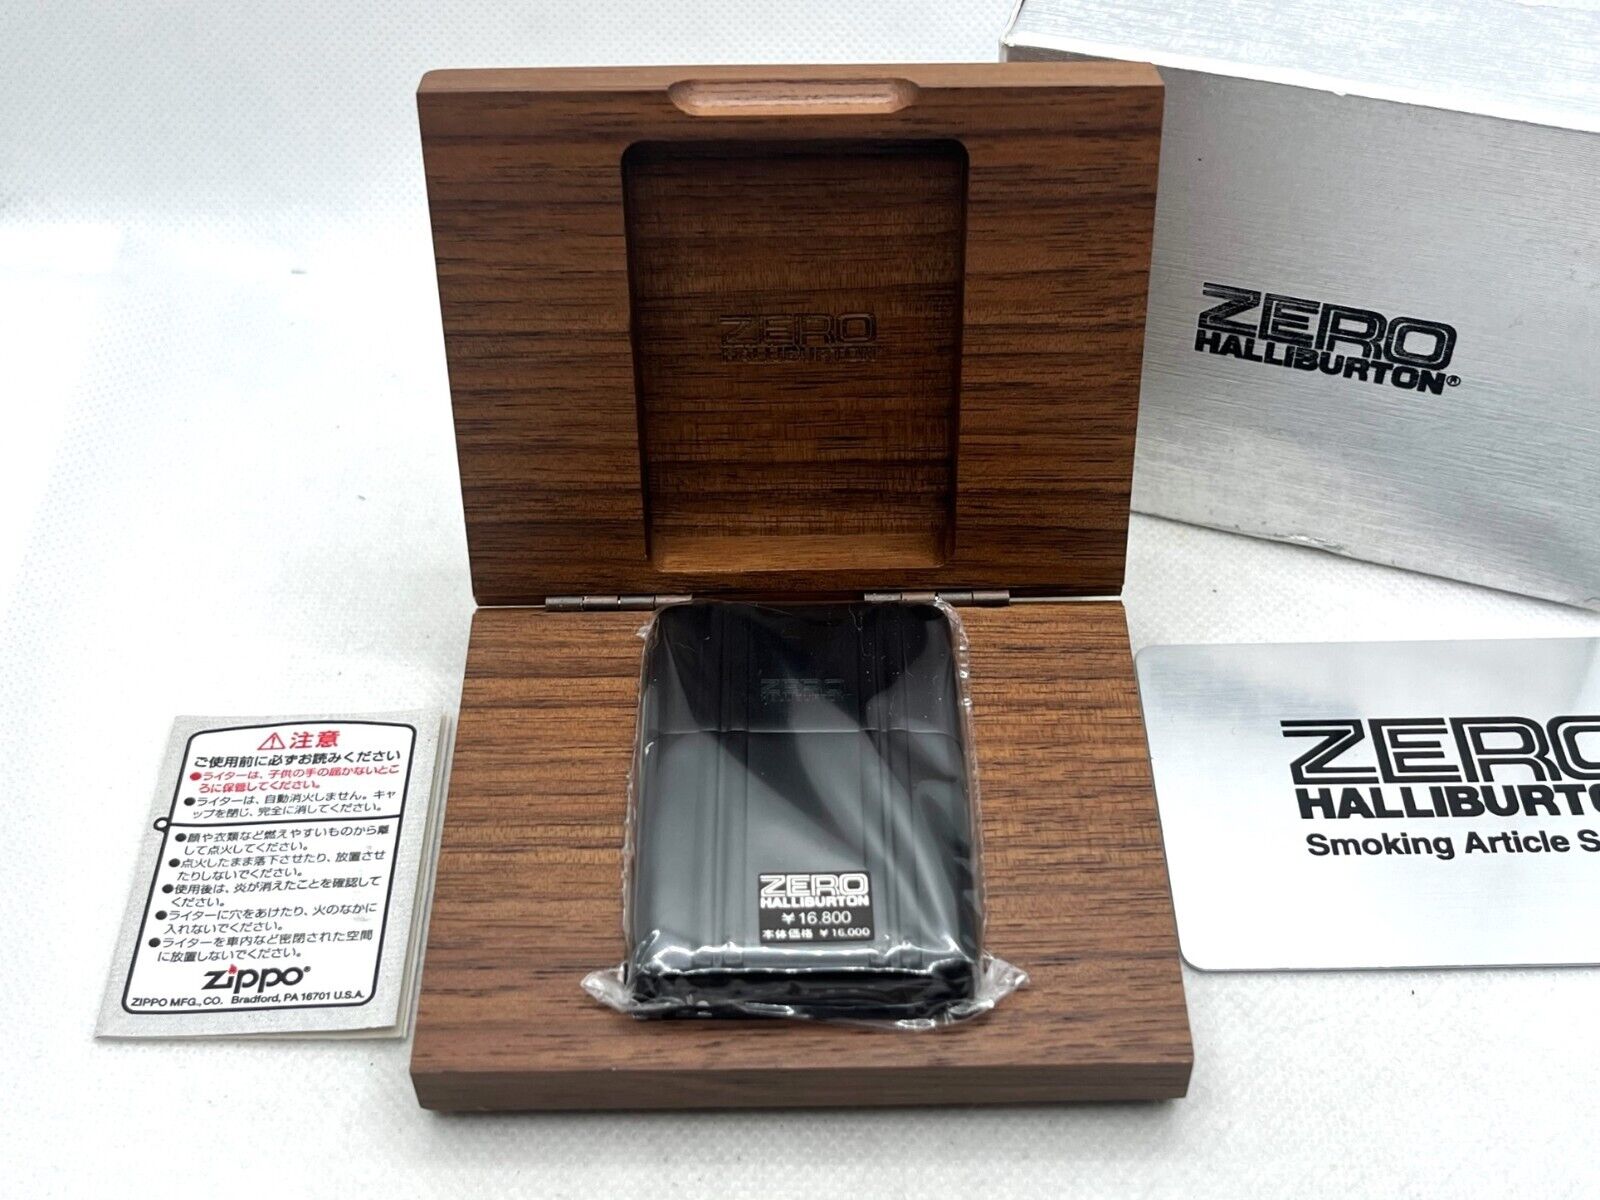 Unused Auth ZIPPO Limited Edition ZERO HALLIBURTON Aluminum Case Lighter Black